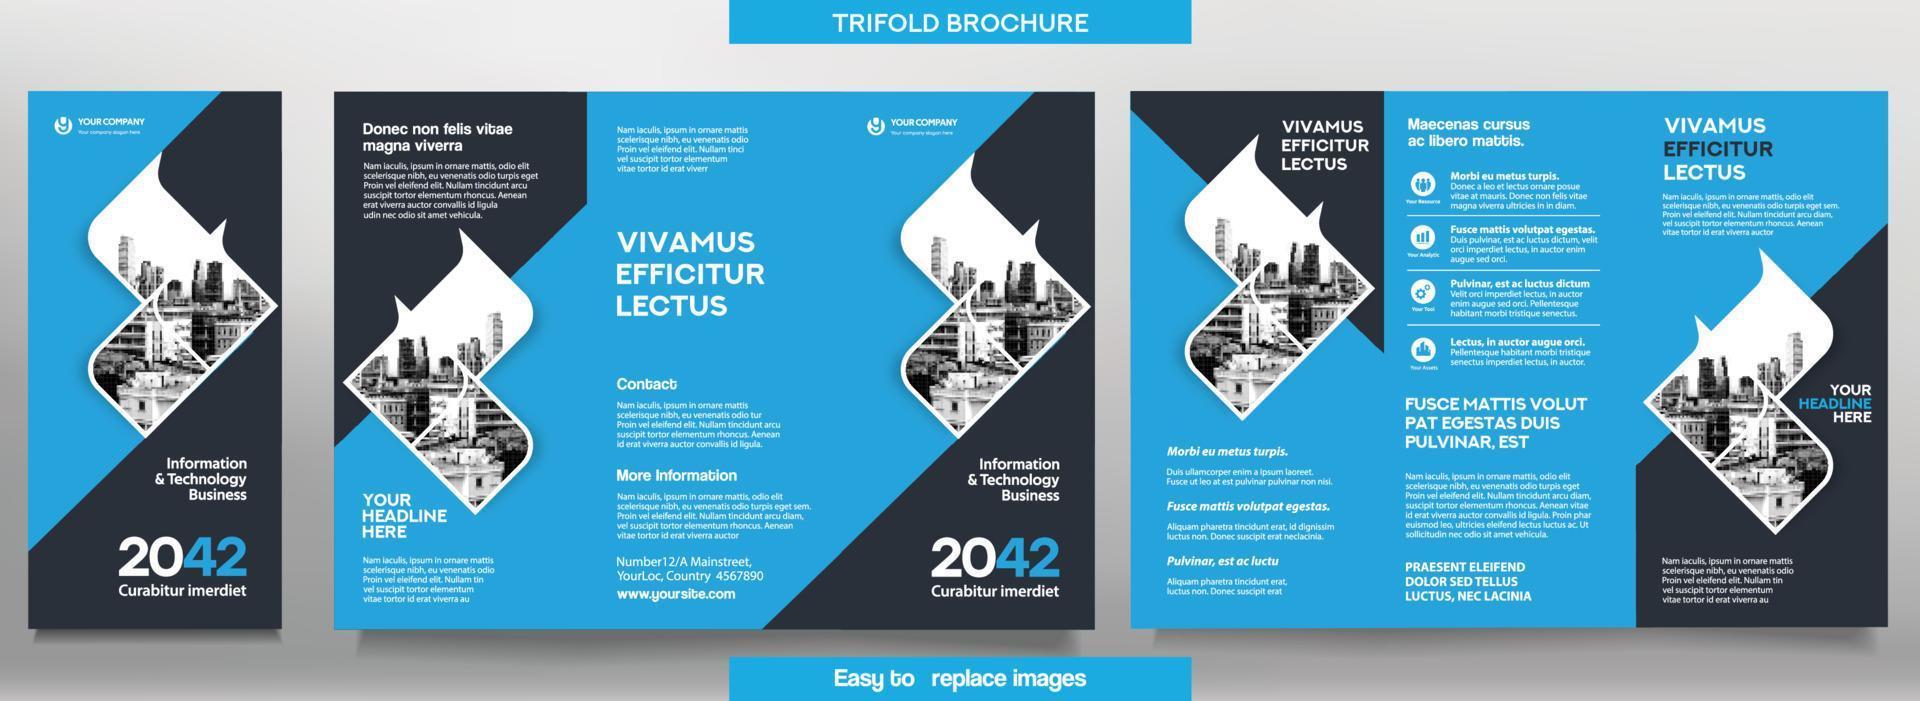 modello di brochure aziendale in layout ripiegabile. opuscolo di corporate design con immagine sostituibile. vettore